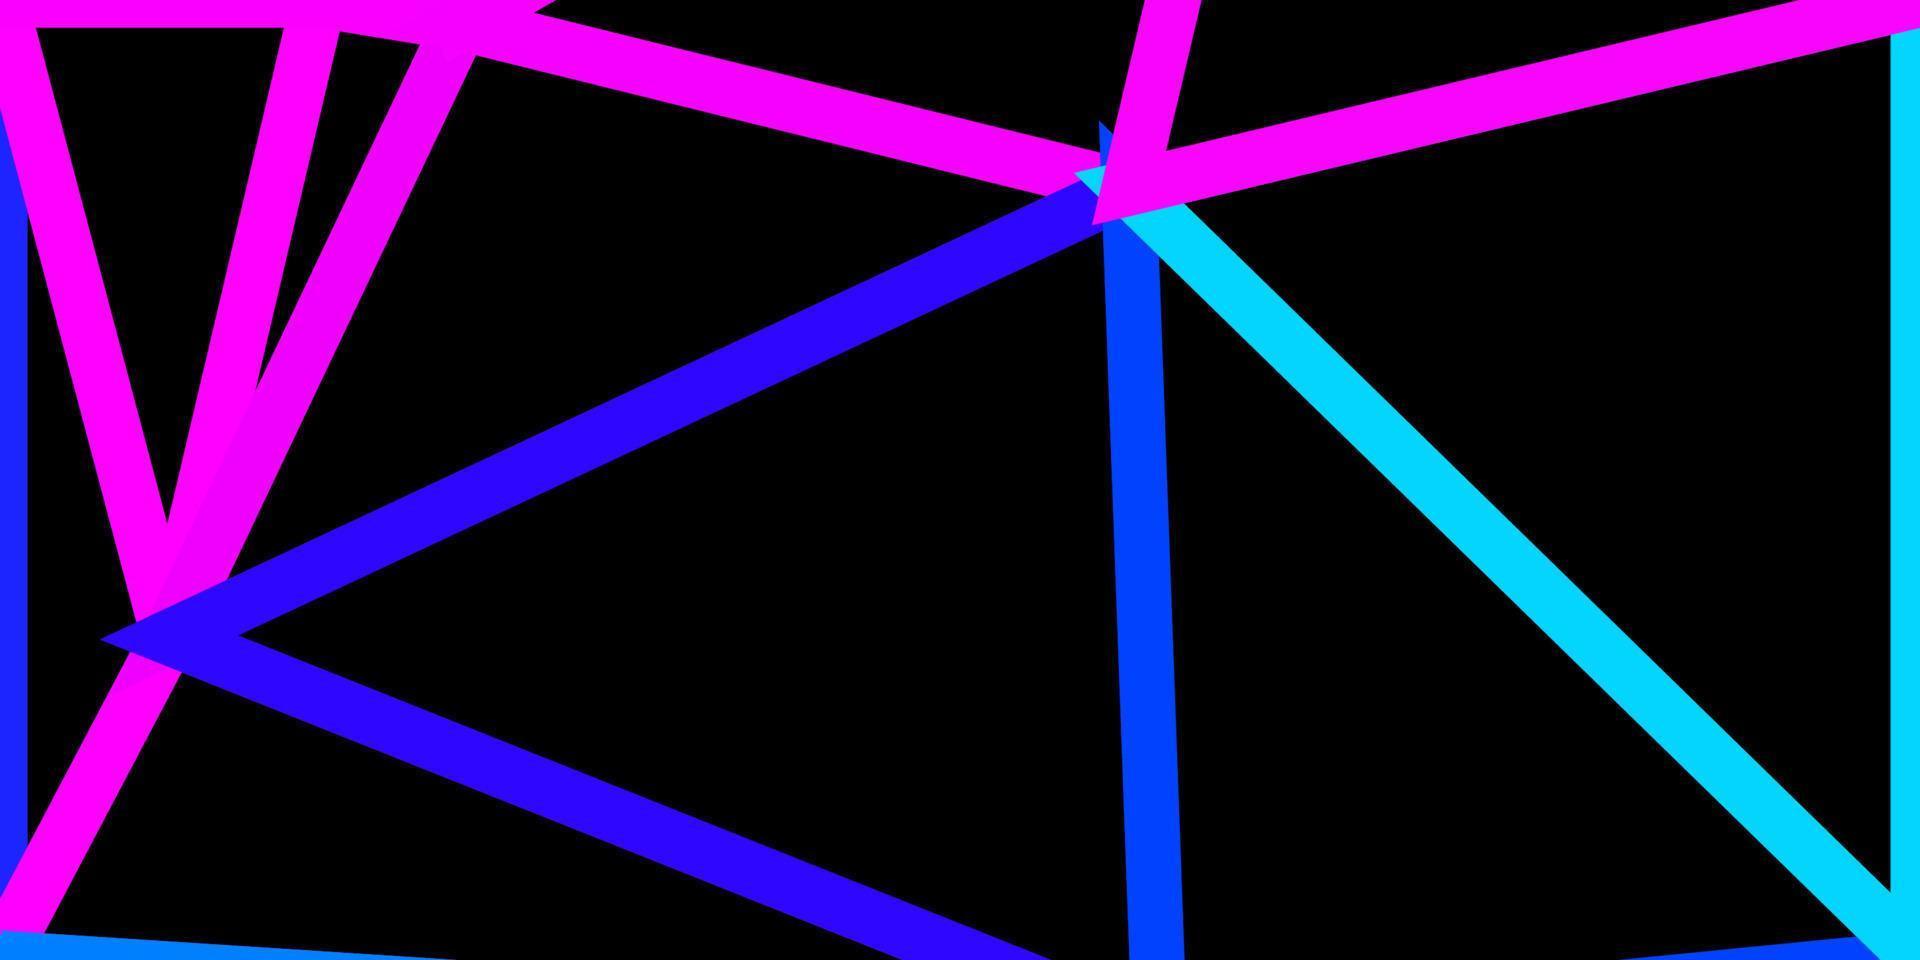 padrão de triângulo abstrato de vetor rosa claro, azul.